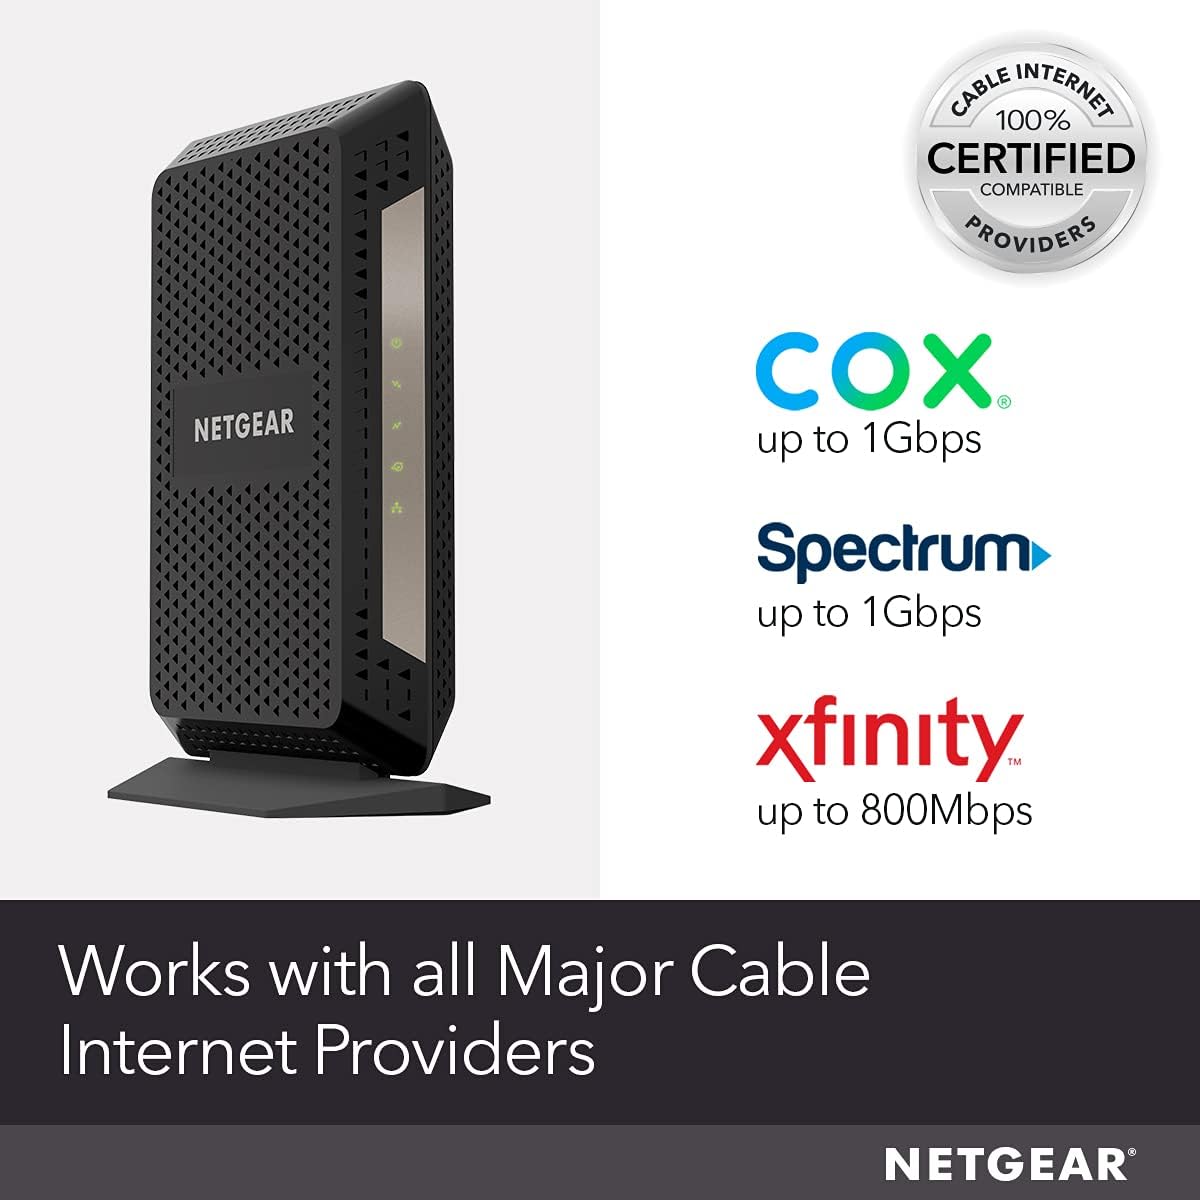 NETGEAR Cable Modem DOCSIS 3.1 (CM1000) Gigabit Modem, Black - $90